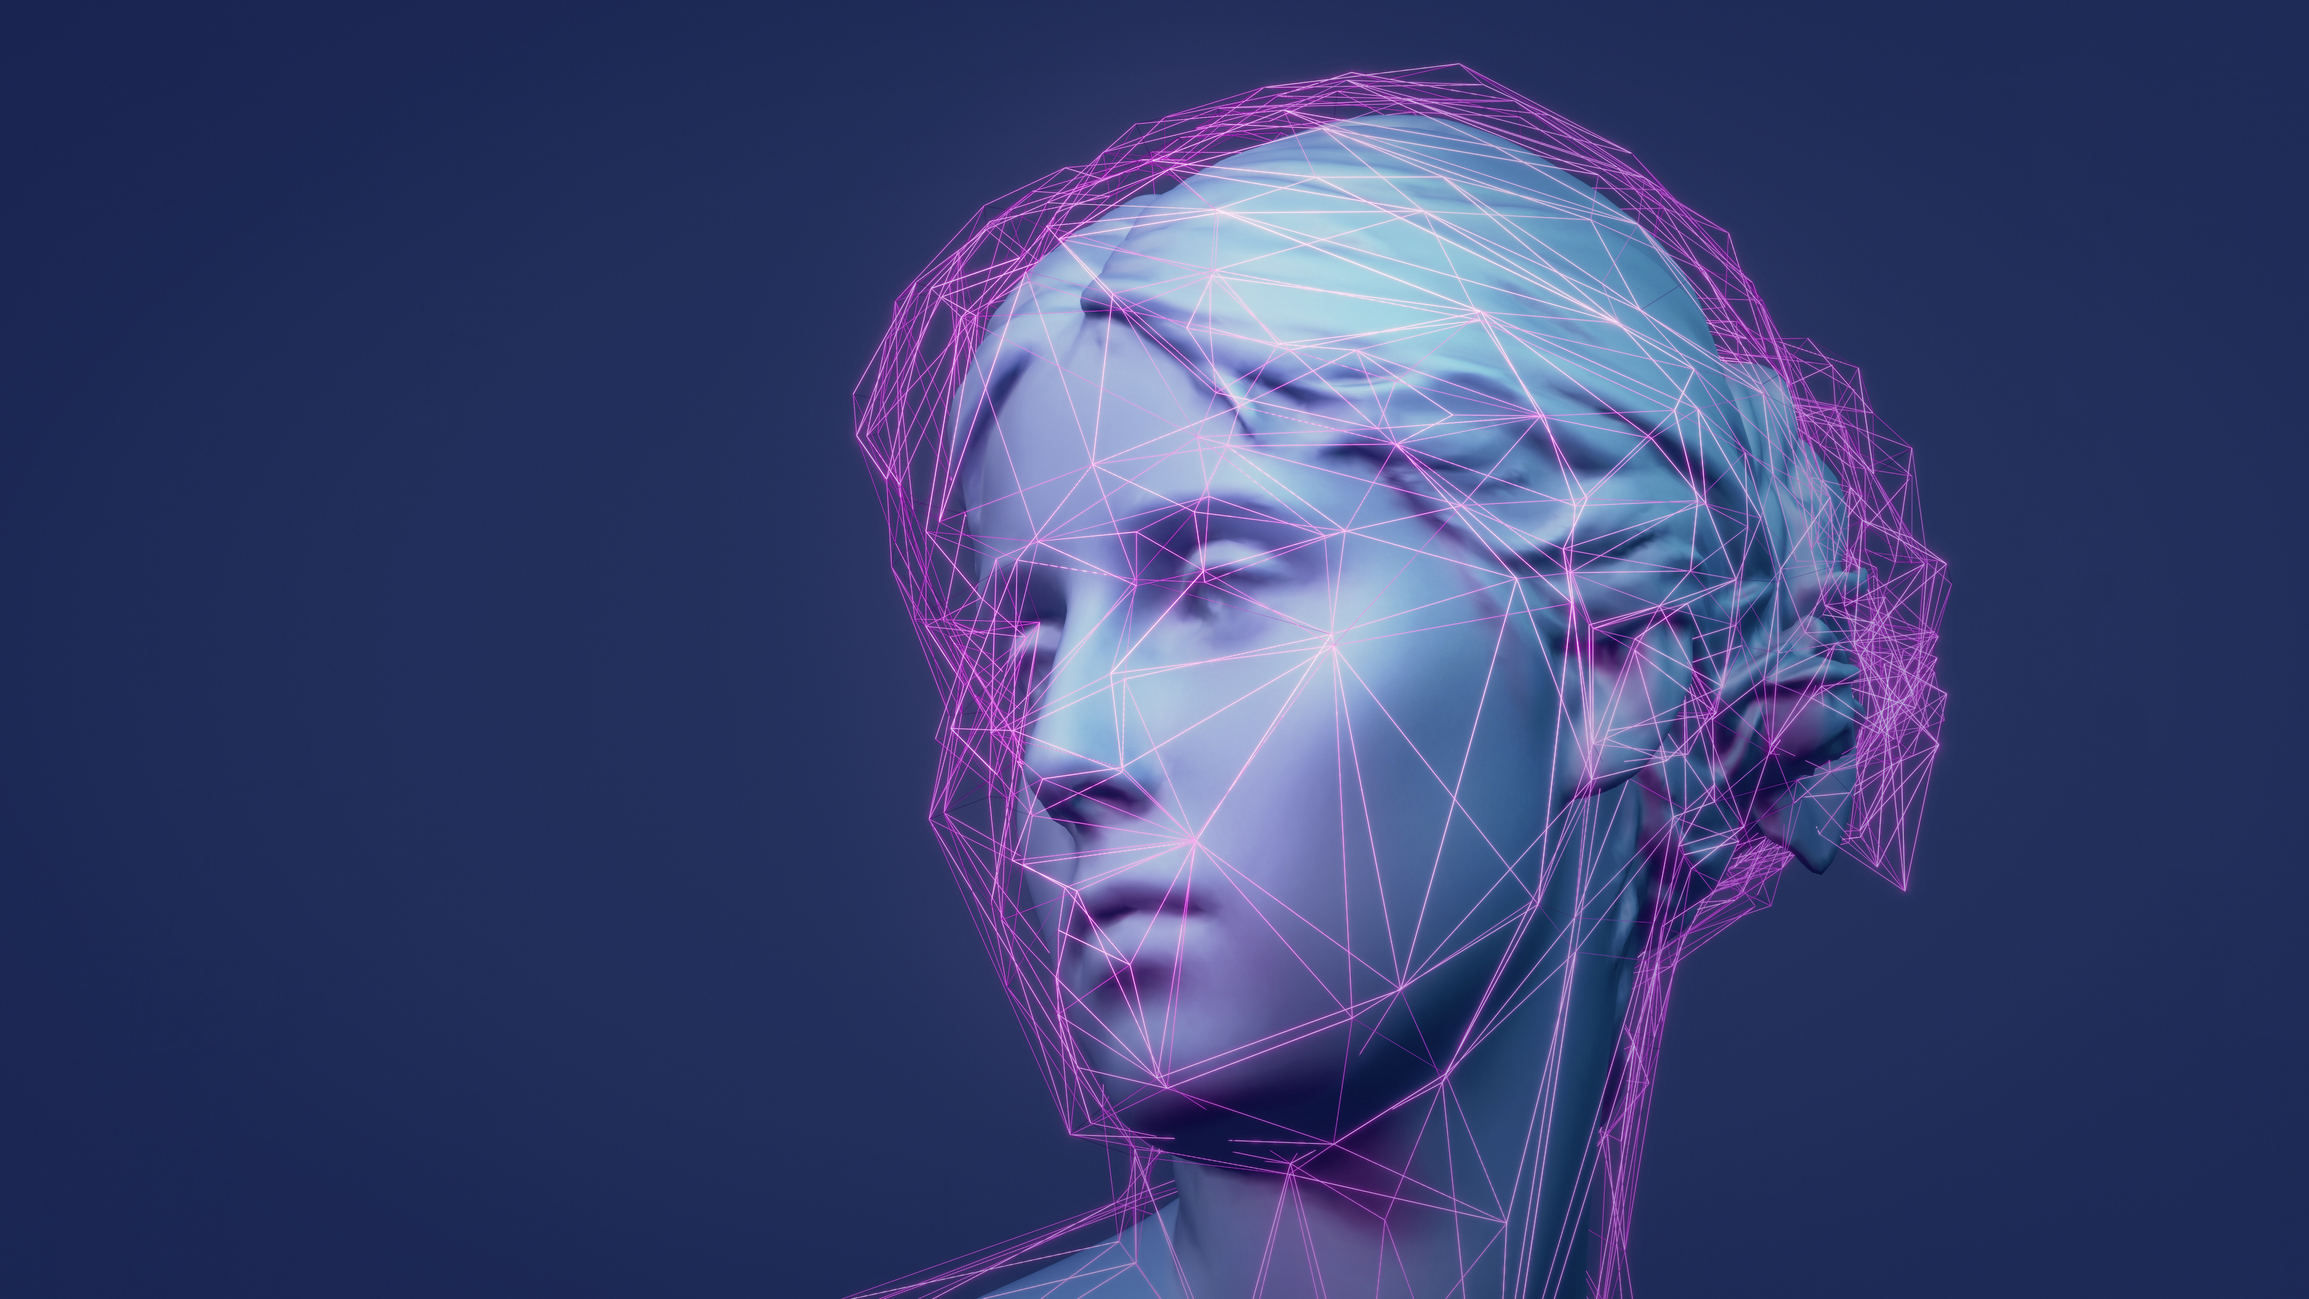 Escultura clásica renderizada en 3D Metaverso avatar con red de líneas púrpuras brillantes de baja poli.  Concepto de aprendizaje automático e inteligencia artificial.  Ejemplo de ilustraciones animadas en 3D NFT.  Fondo de tecnología web 3.0.